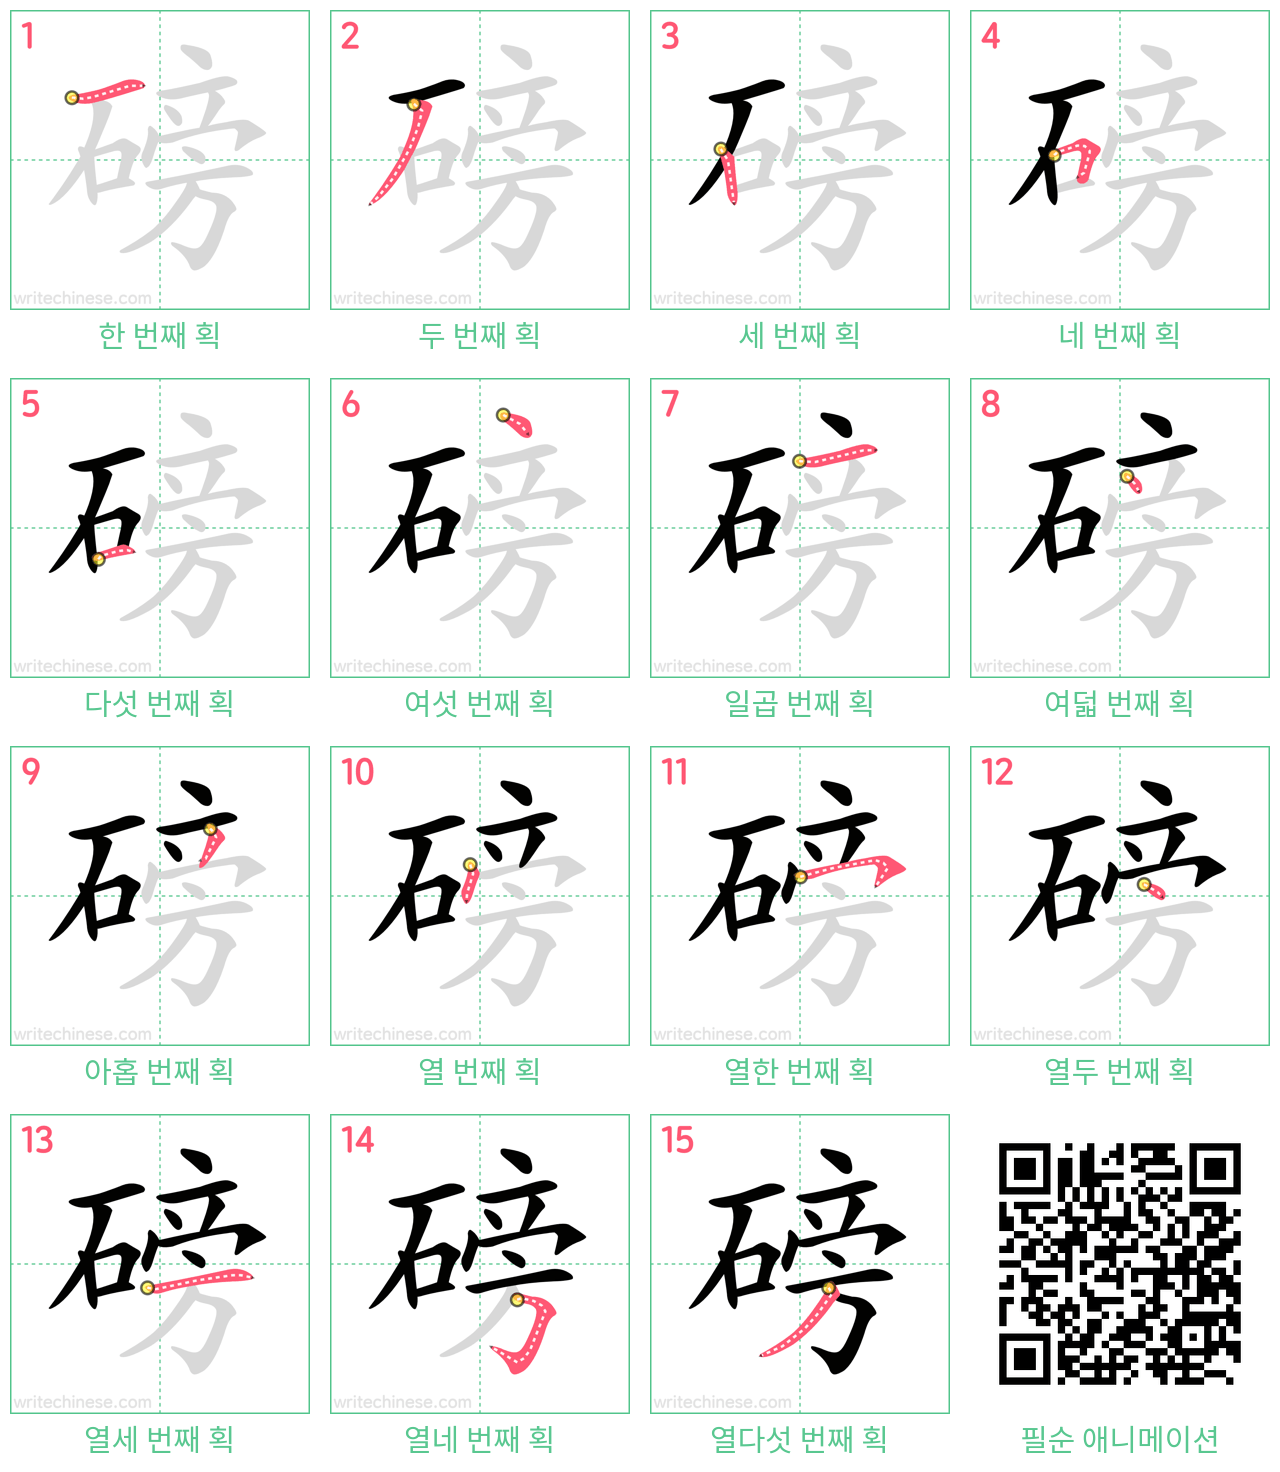 磅 step-by-step stroke order diagrams